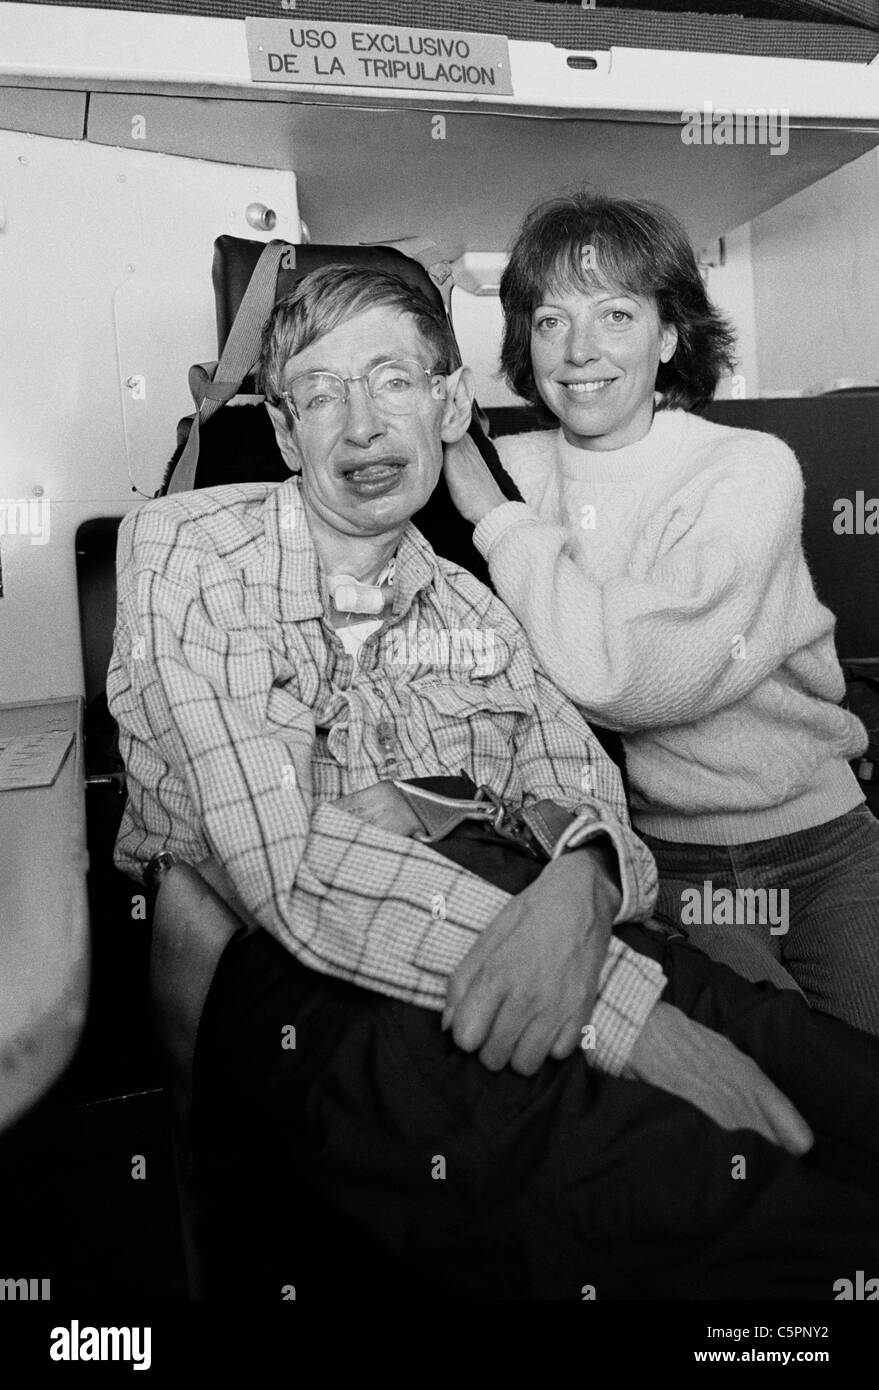 Stephen Hawking y su asistente en un helicóptero lo llevaron en un viaje alrededor de la base antártica chilena. Antartica, Chile1997 Foto de stock